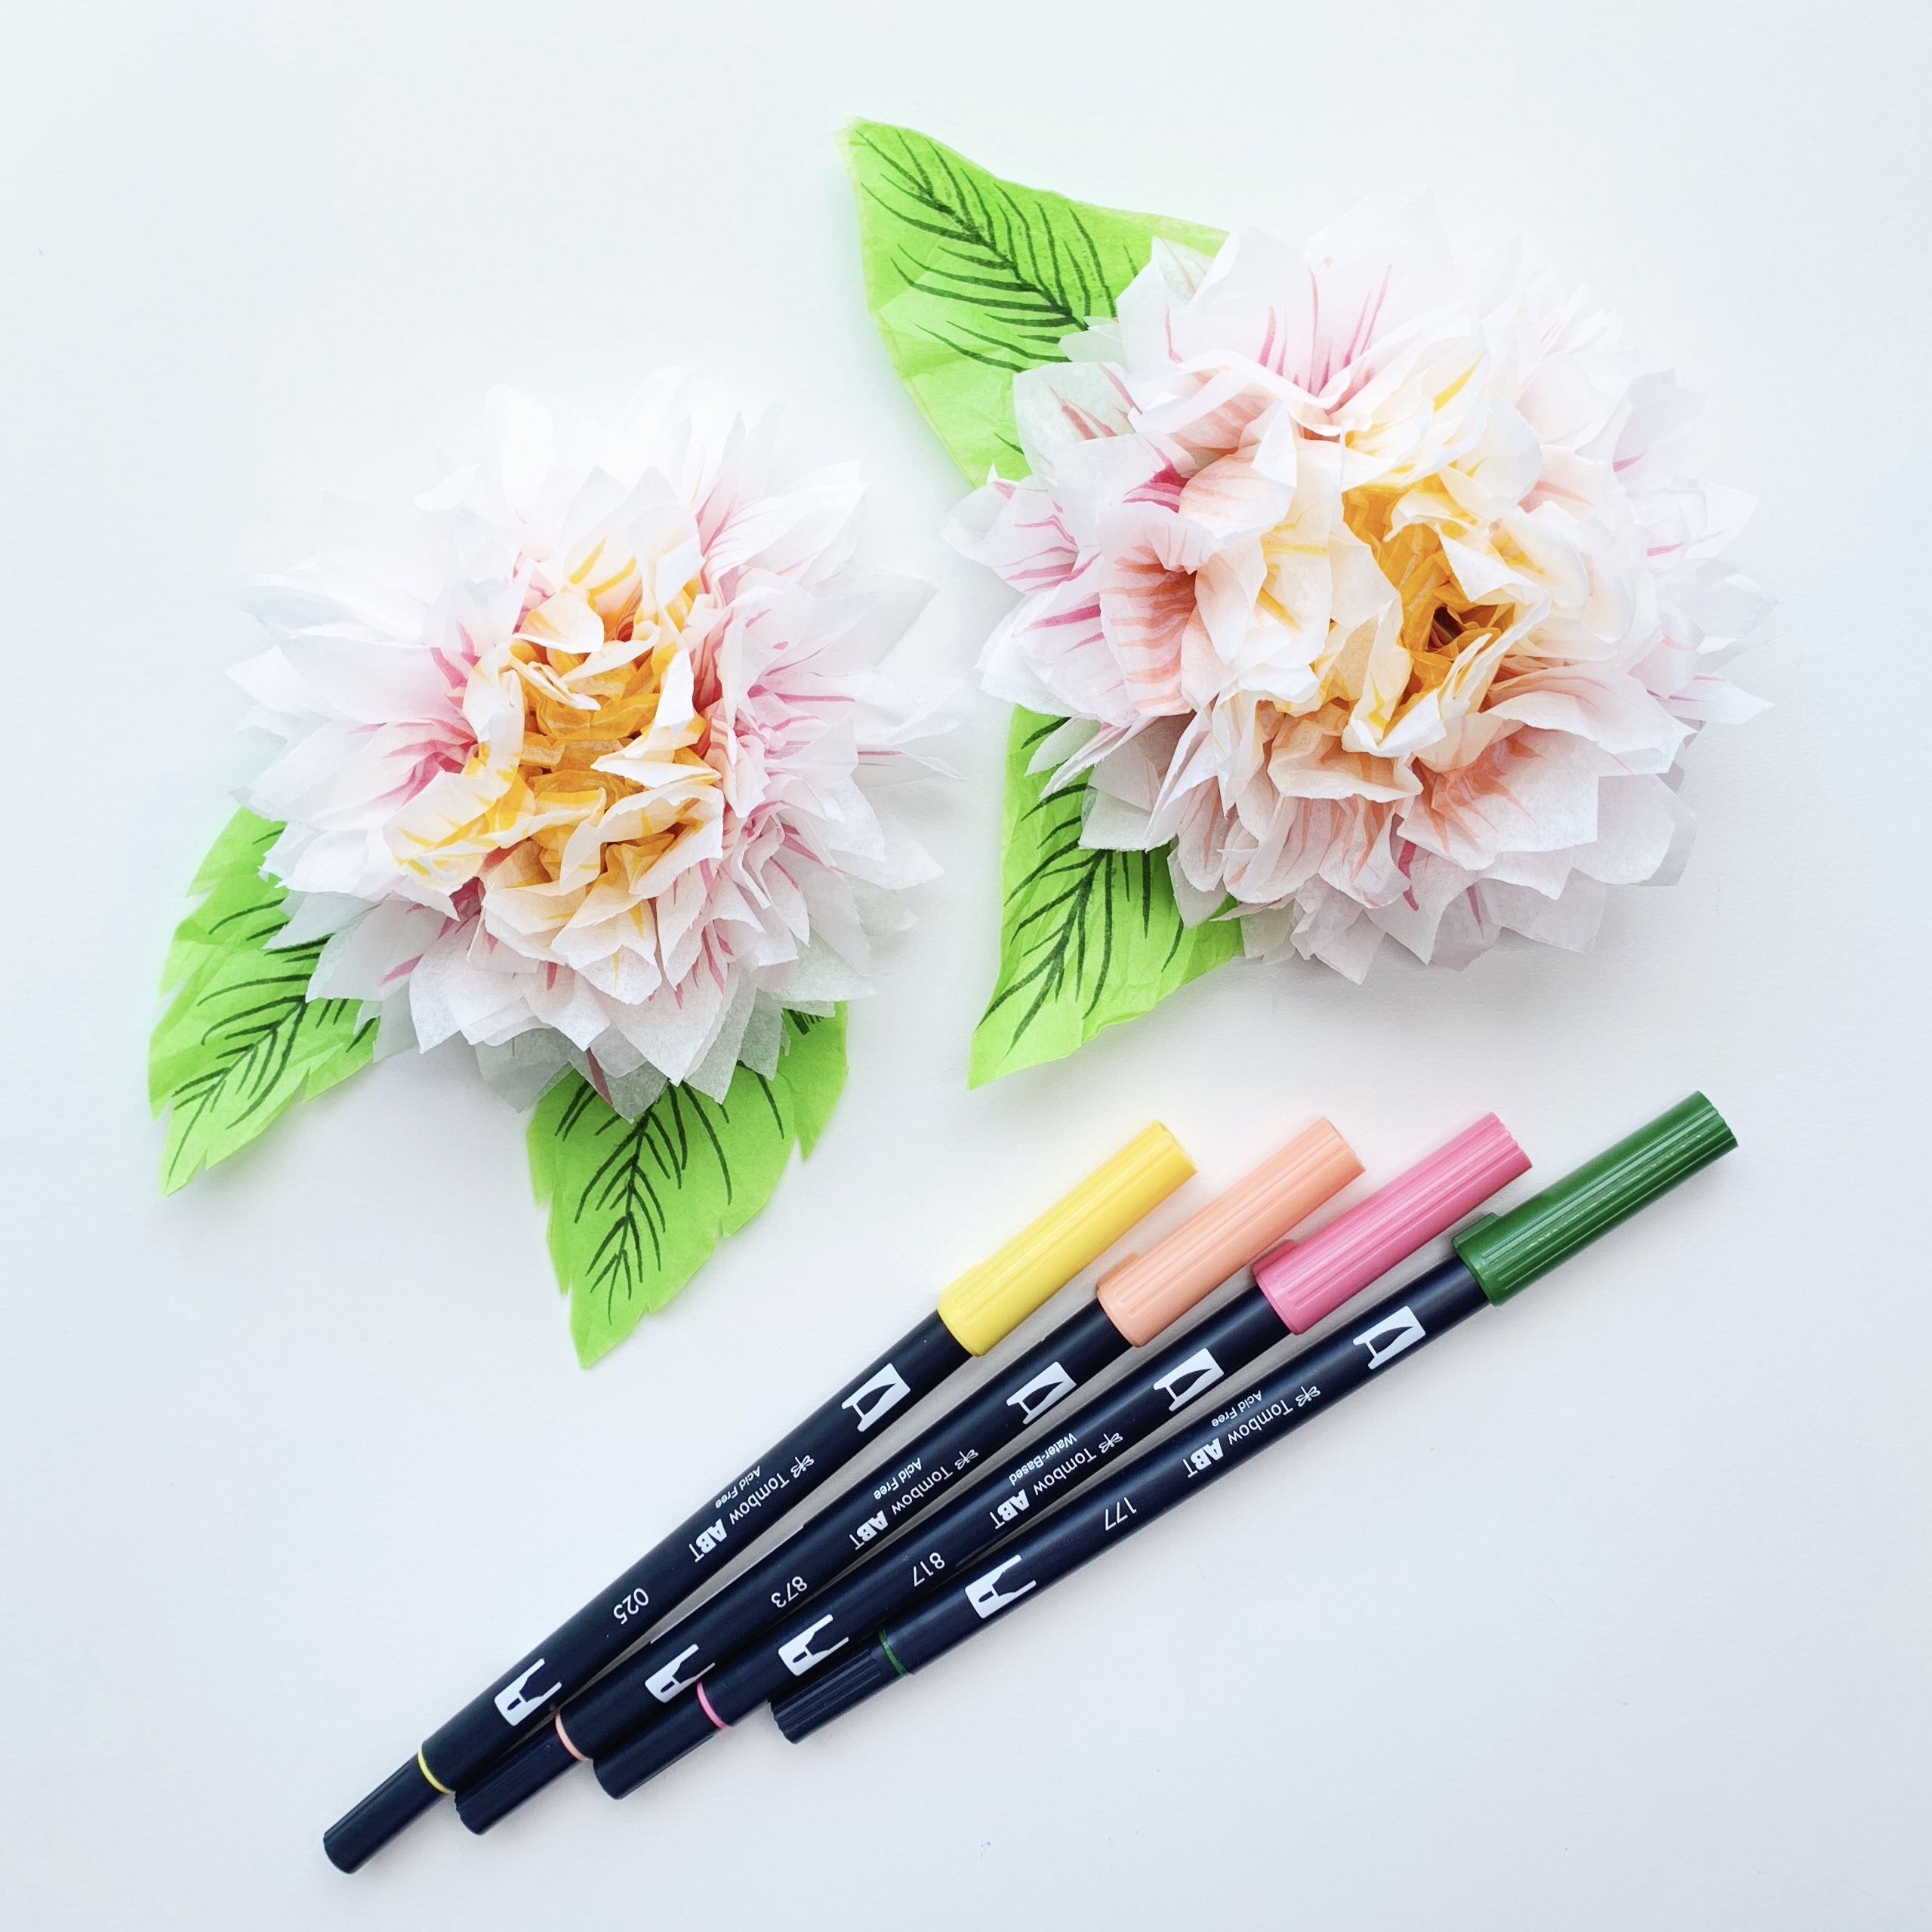 Pen + Paper Flowers: BAKING